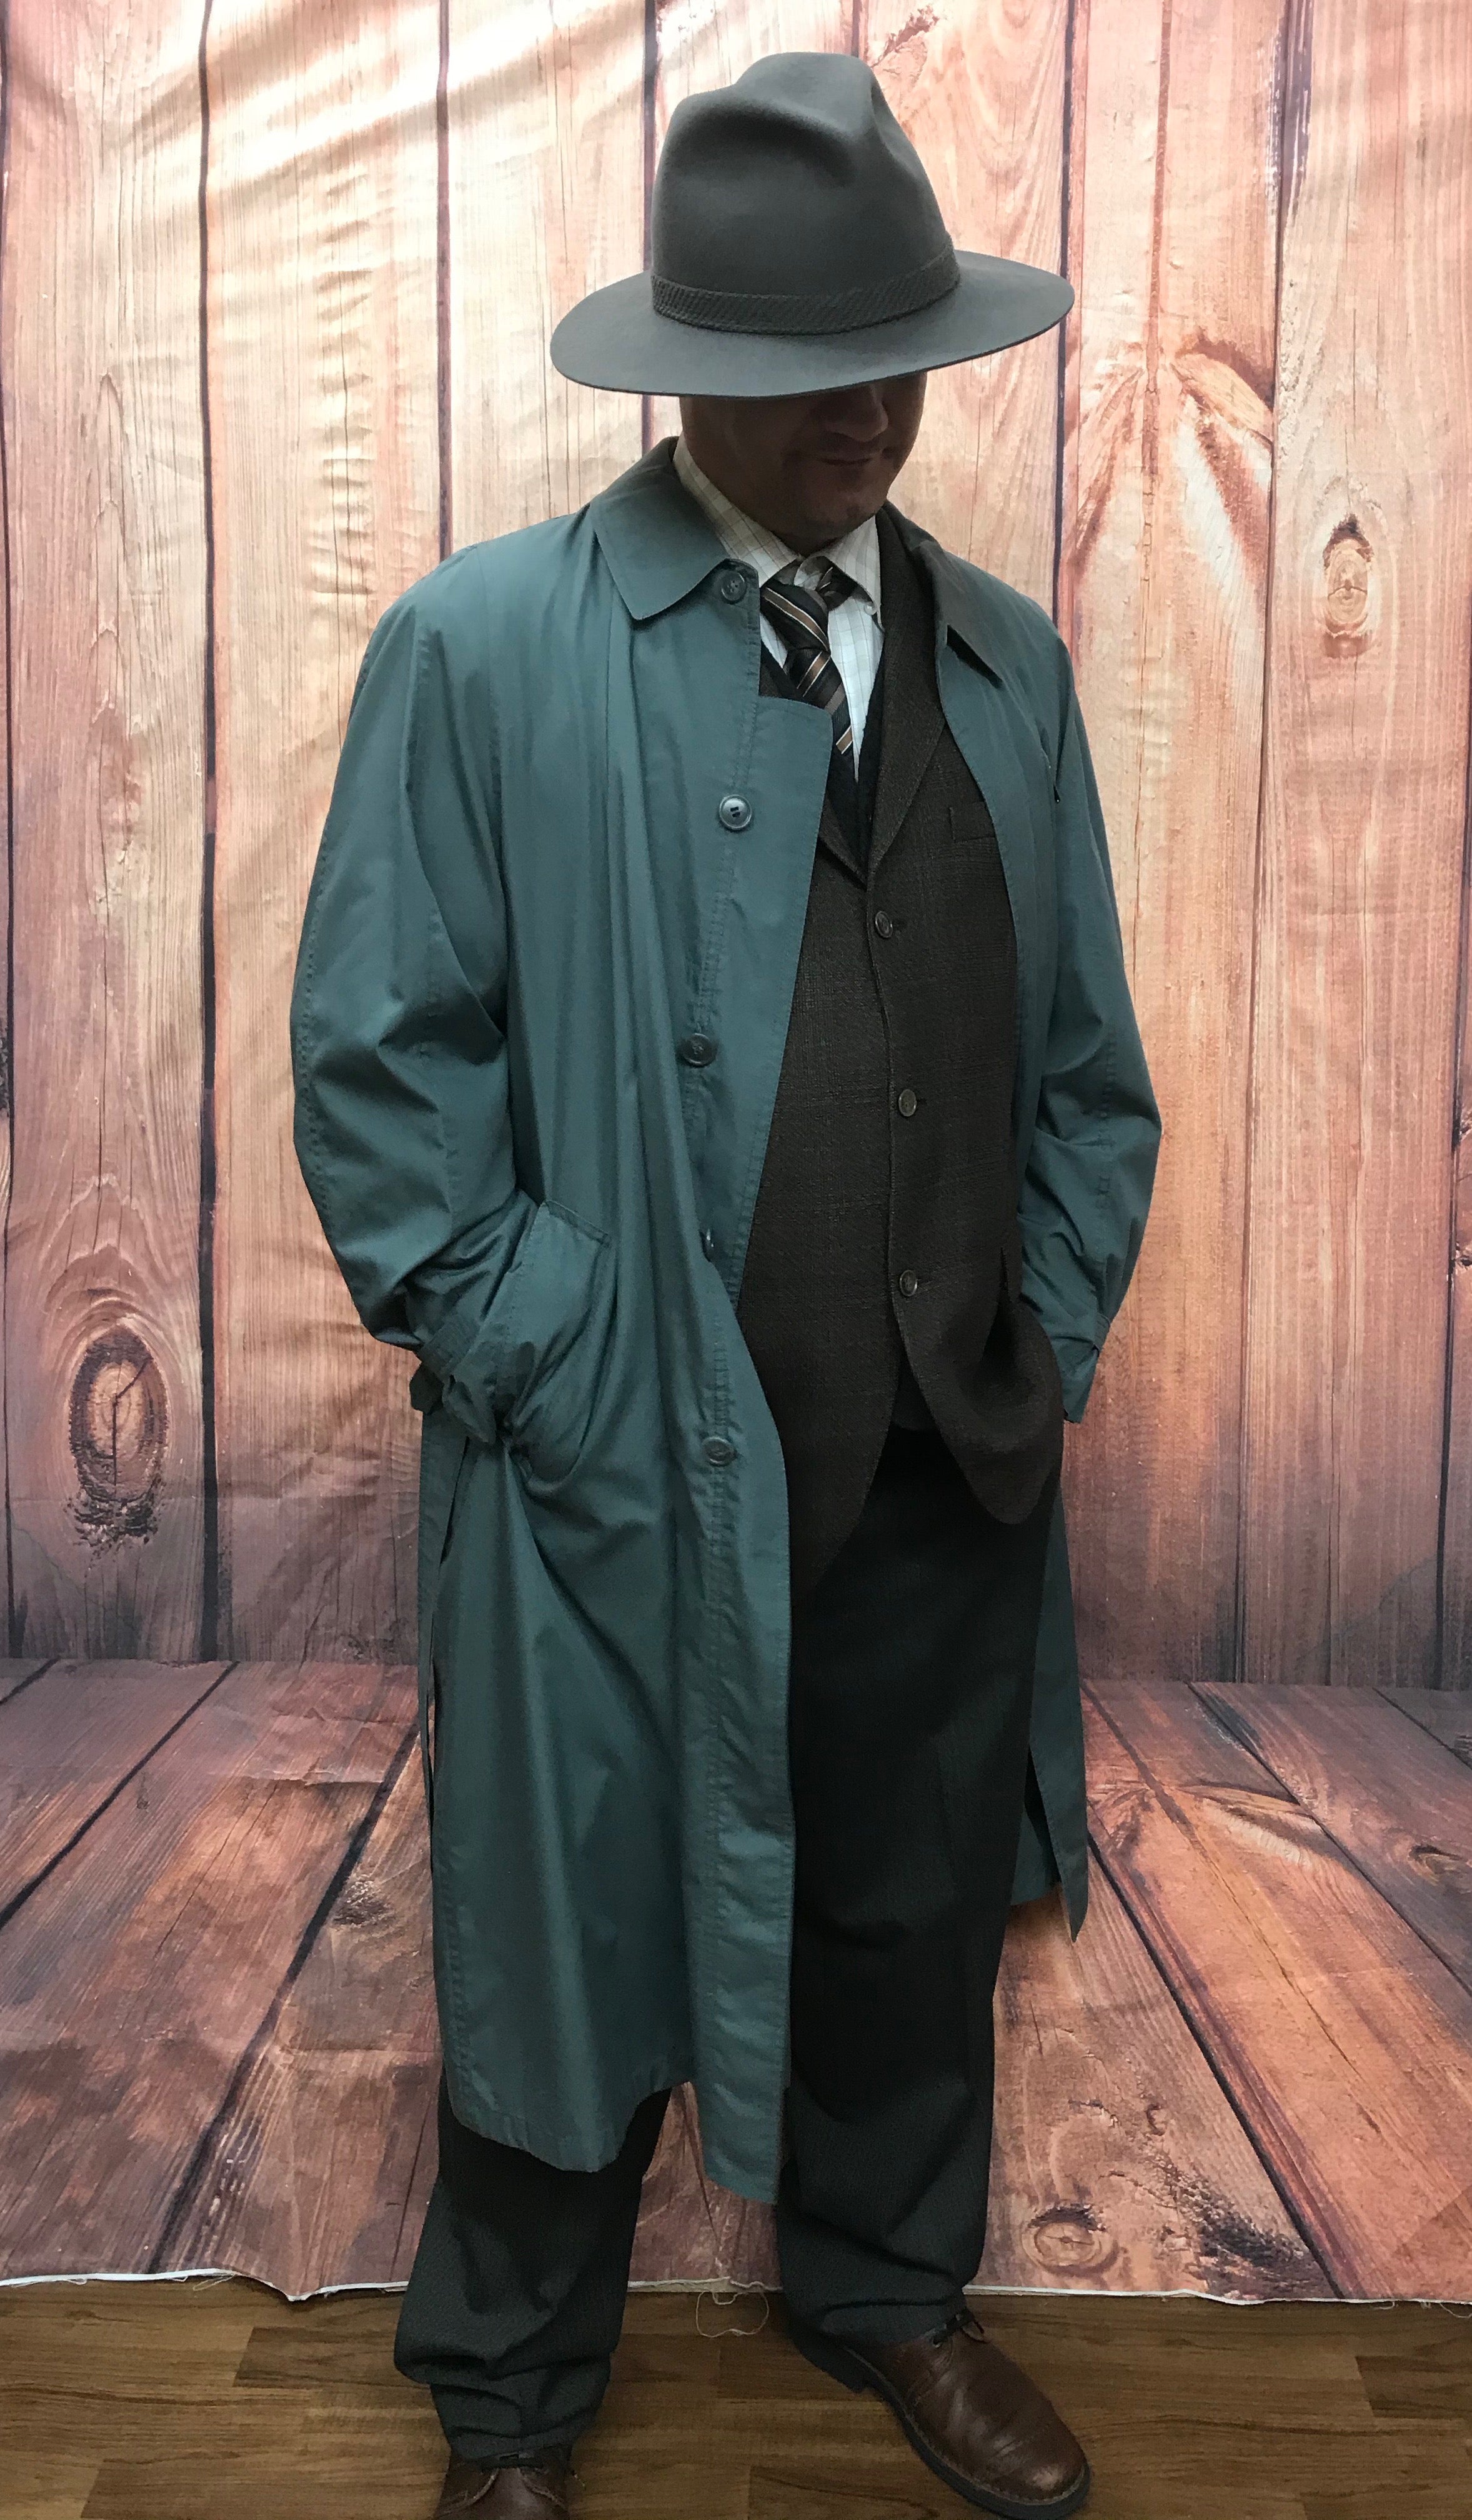 Trenchcoat für Herren Gr.52 (54) graublautrenchcoat mantel berlin babylon